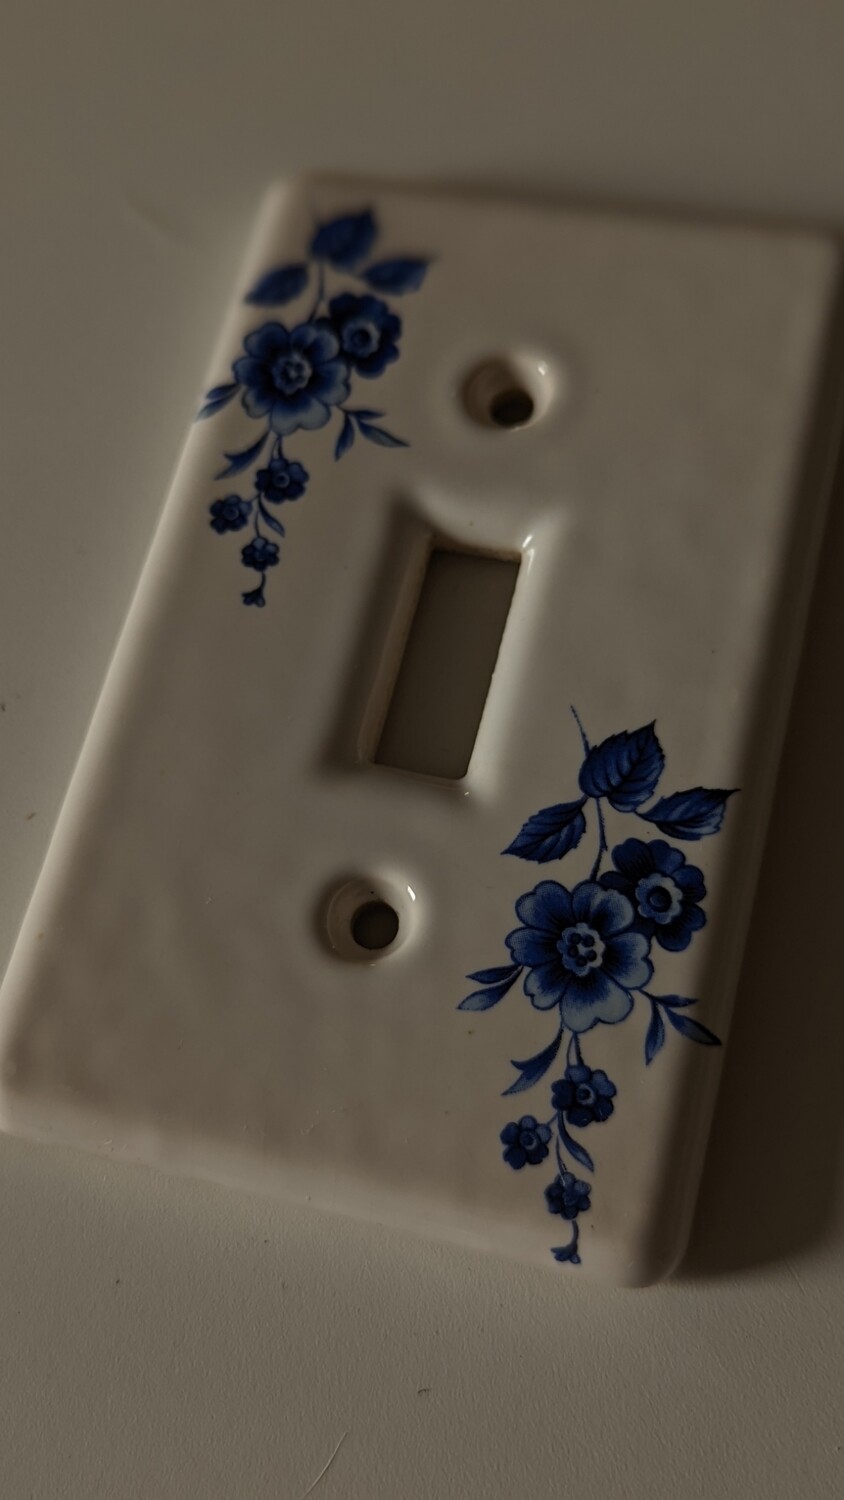 ceramic light switch plaque